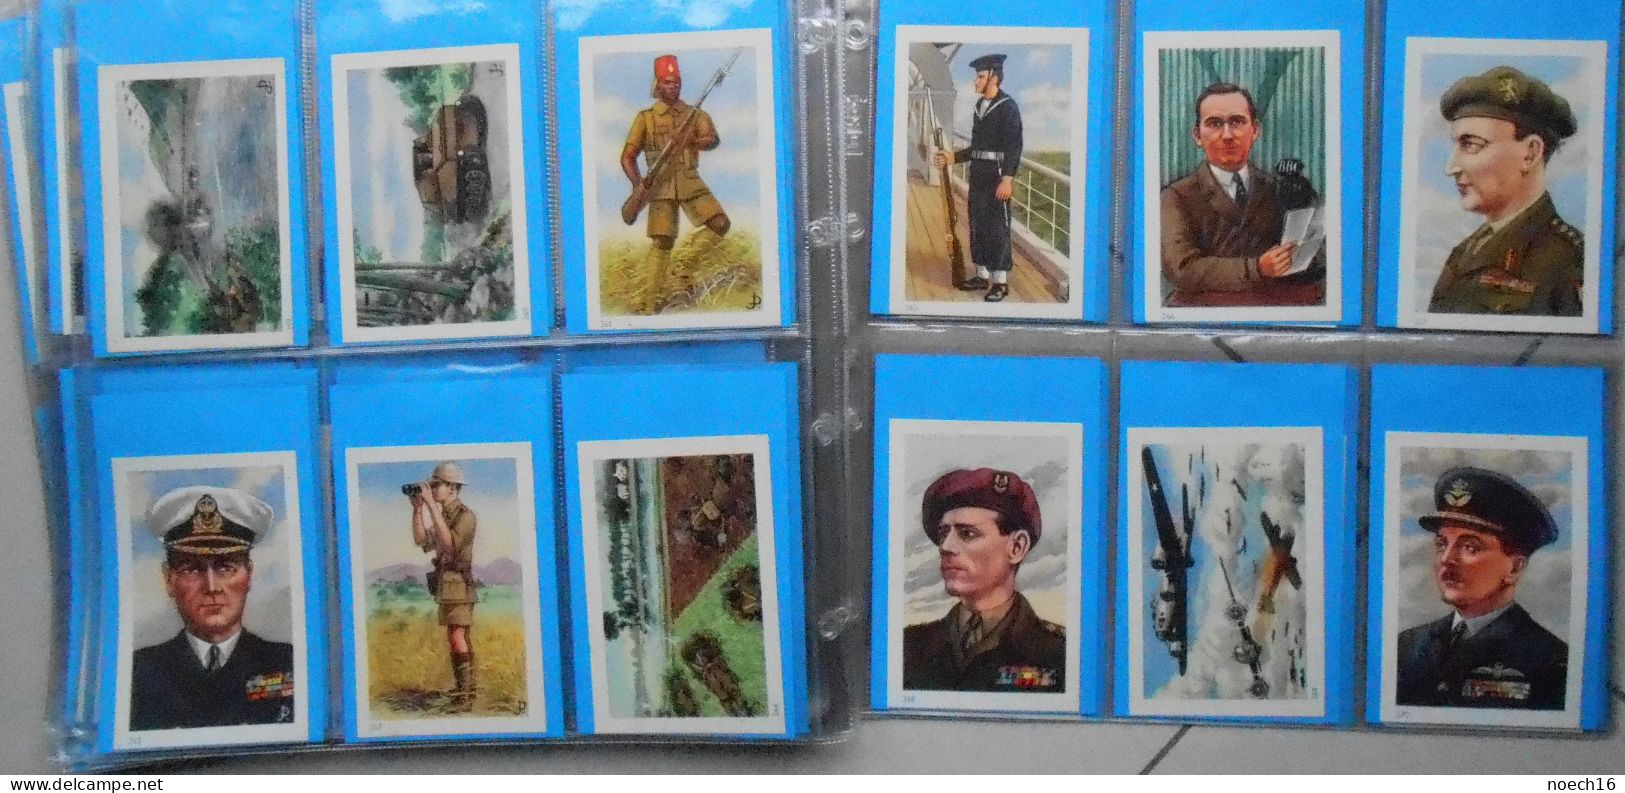 Collection complète 290 Chromos, Images. Ri- Ri Demaret. Histoire militaire de Belgique